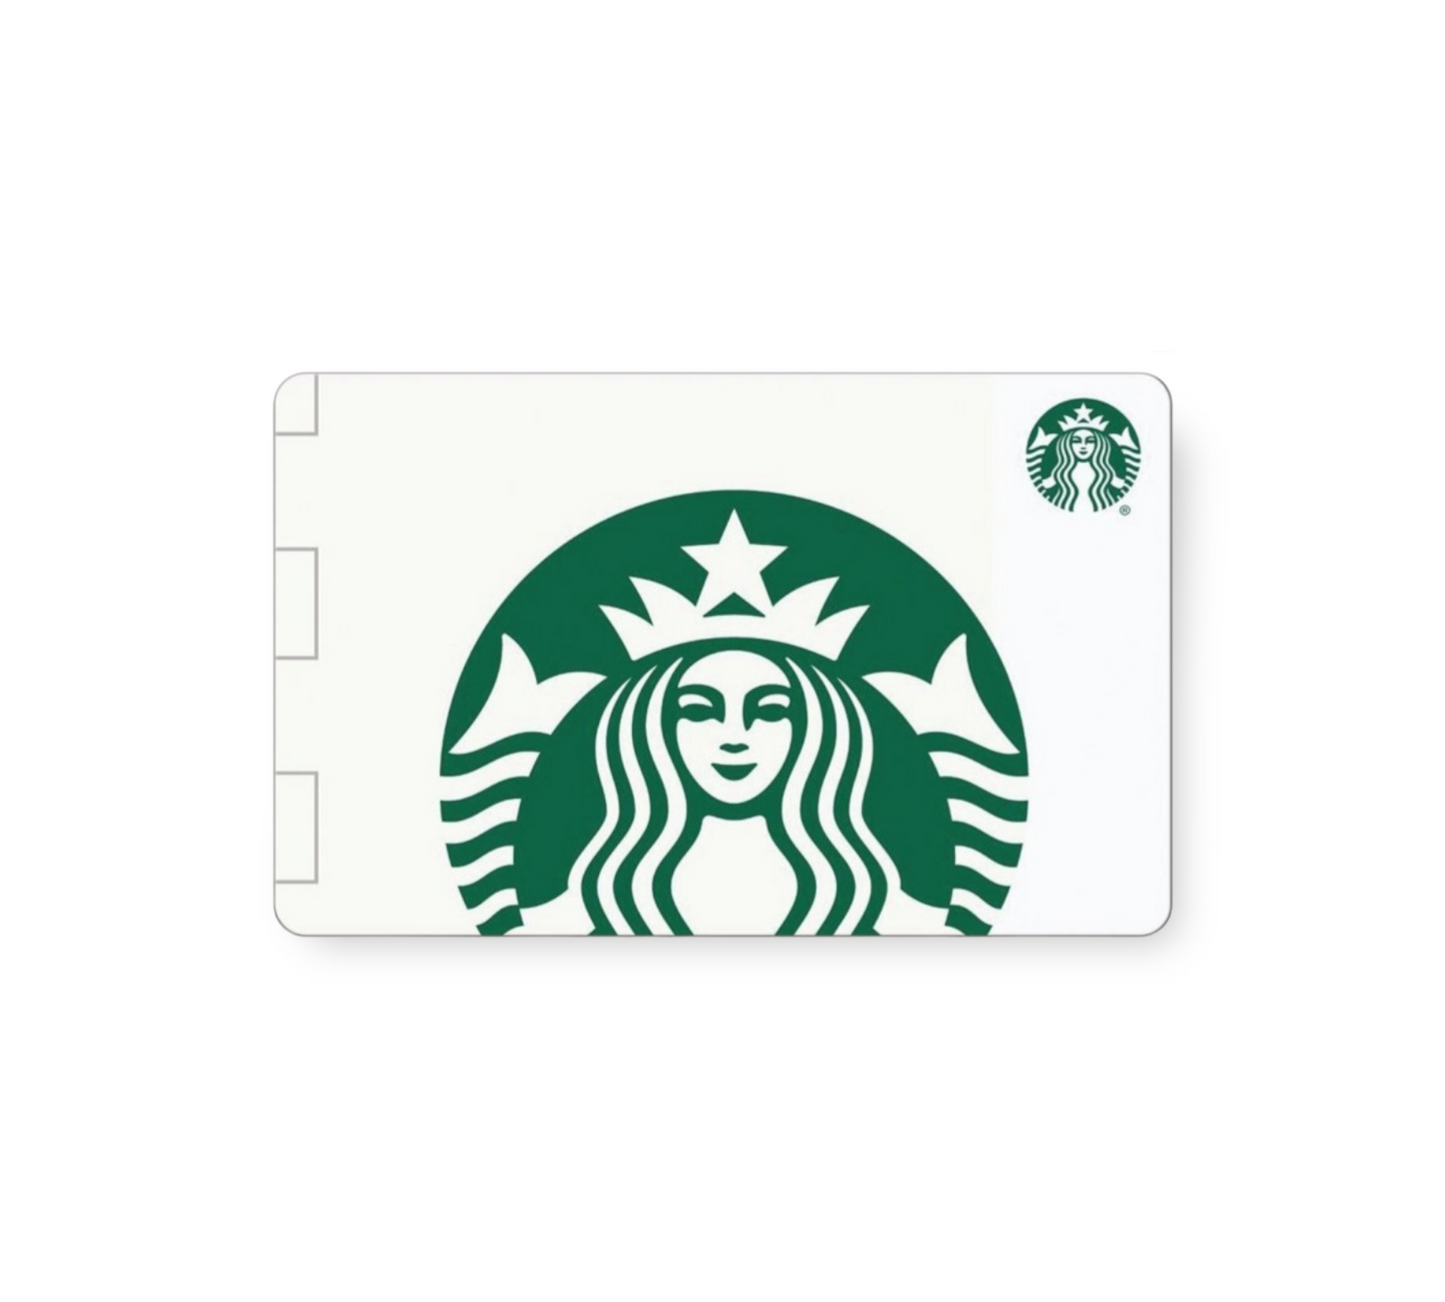 Starbucks Gift Card, $10 Value - Heartfelt Gift Box